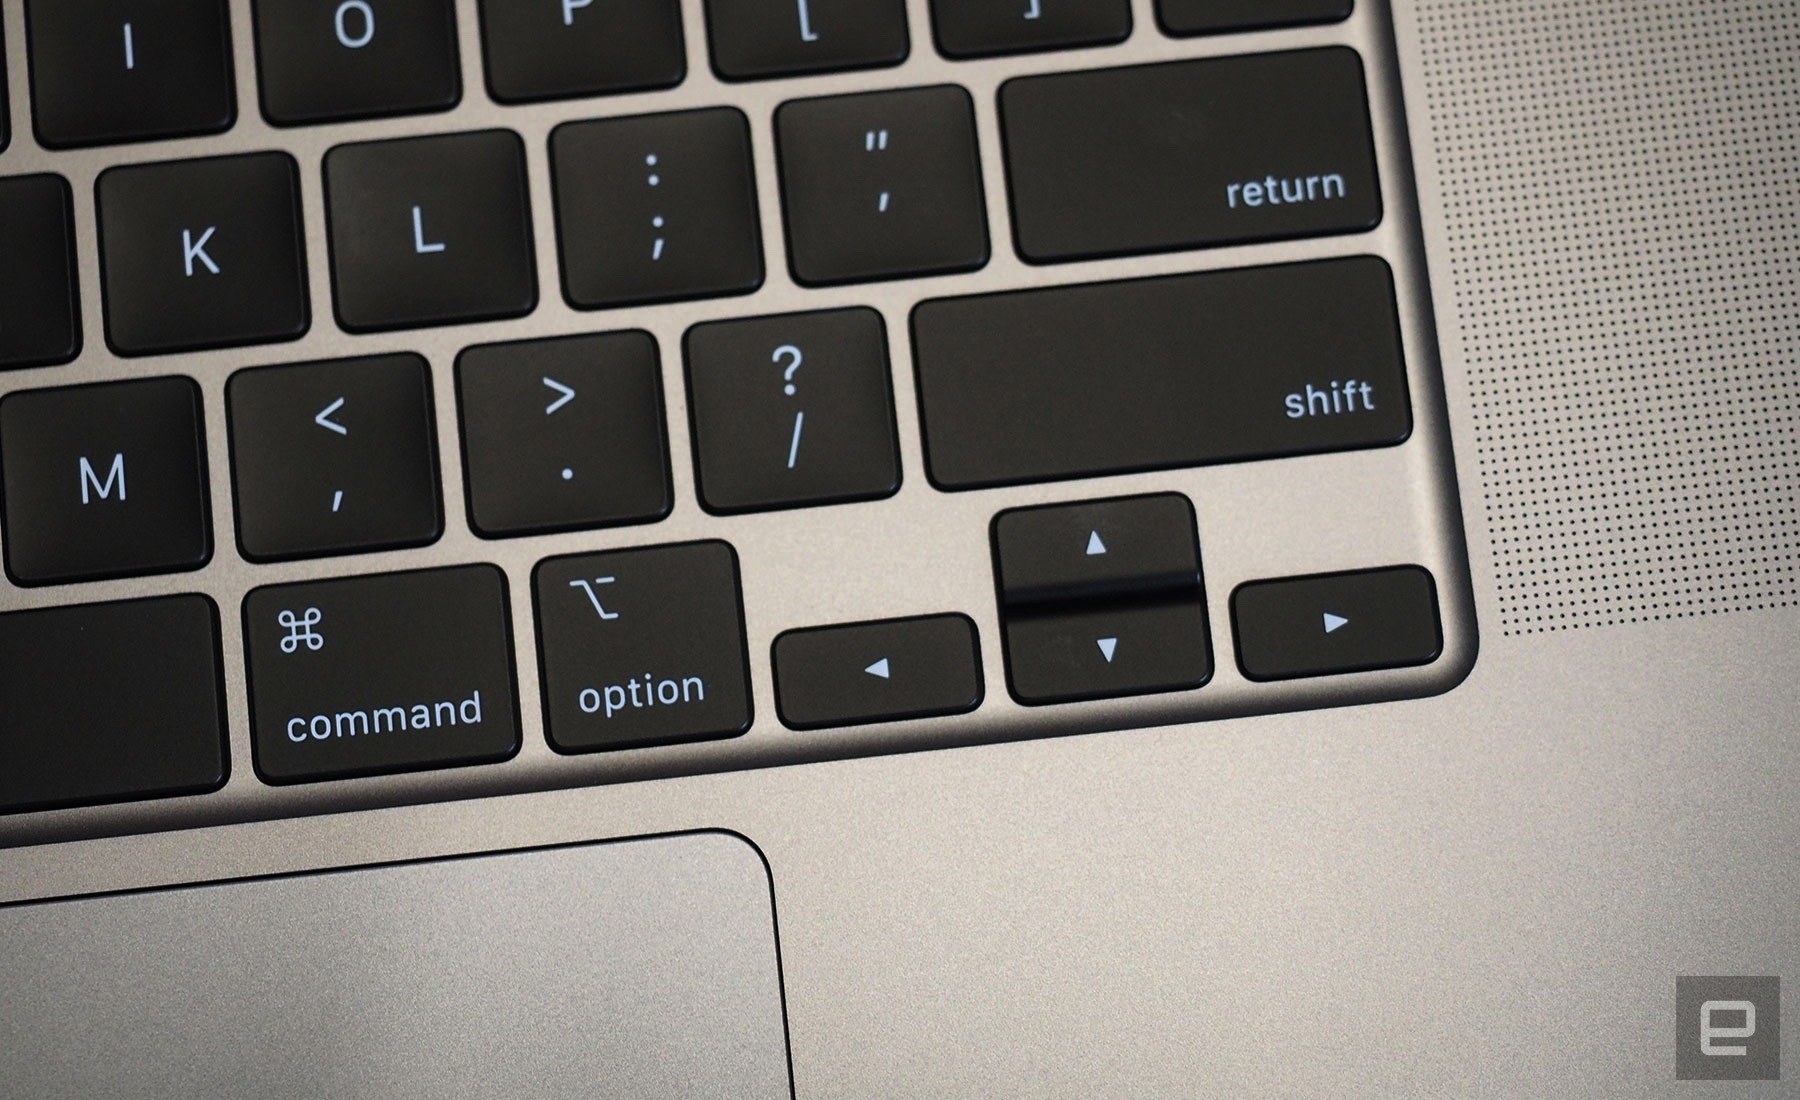 Apple chính thức ra mắt MacBook Pro 16 inch với
bàn phím Magic Keyboard mới, 6 loa ngon hơn, giá khởi điểm
gần 55.7 triệu đồng